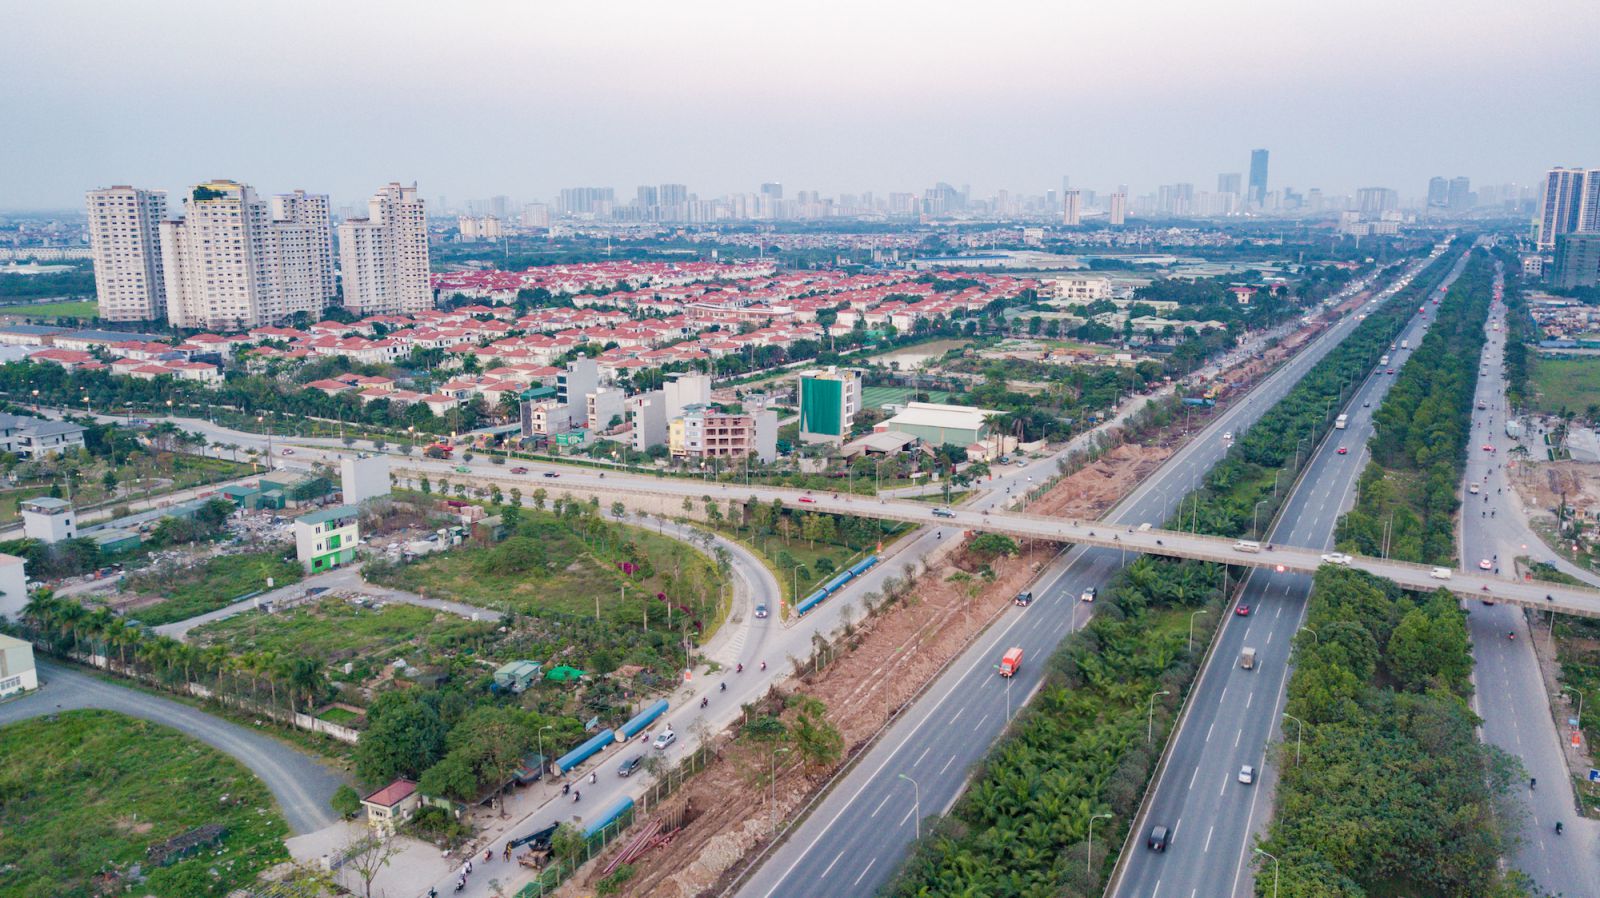 Đại lộ Thăng Long là trọng tâm để phát triển các đô thị, thành phố sáng tạo tại cửa ngõ Tây Hà Nội.